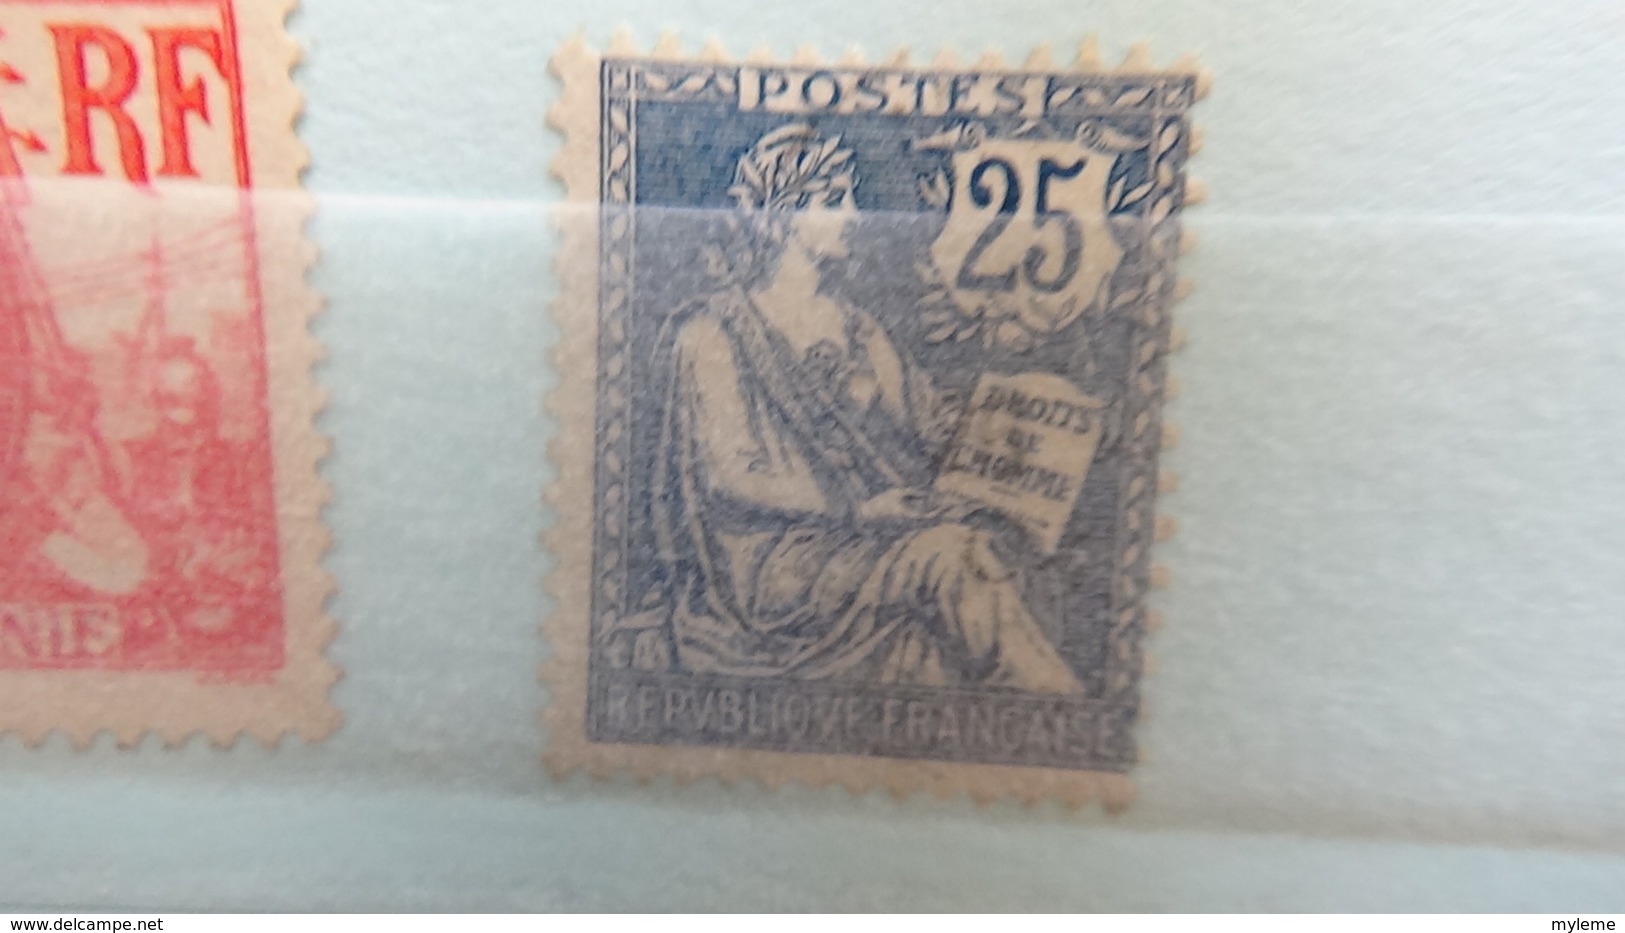 Belles séries et timbres ** de France dont 930à935, philatec, 841, carnet croix rouge ... Voir commentaires !!!